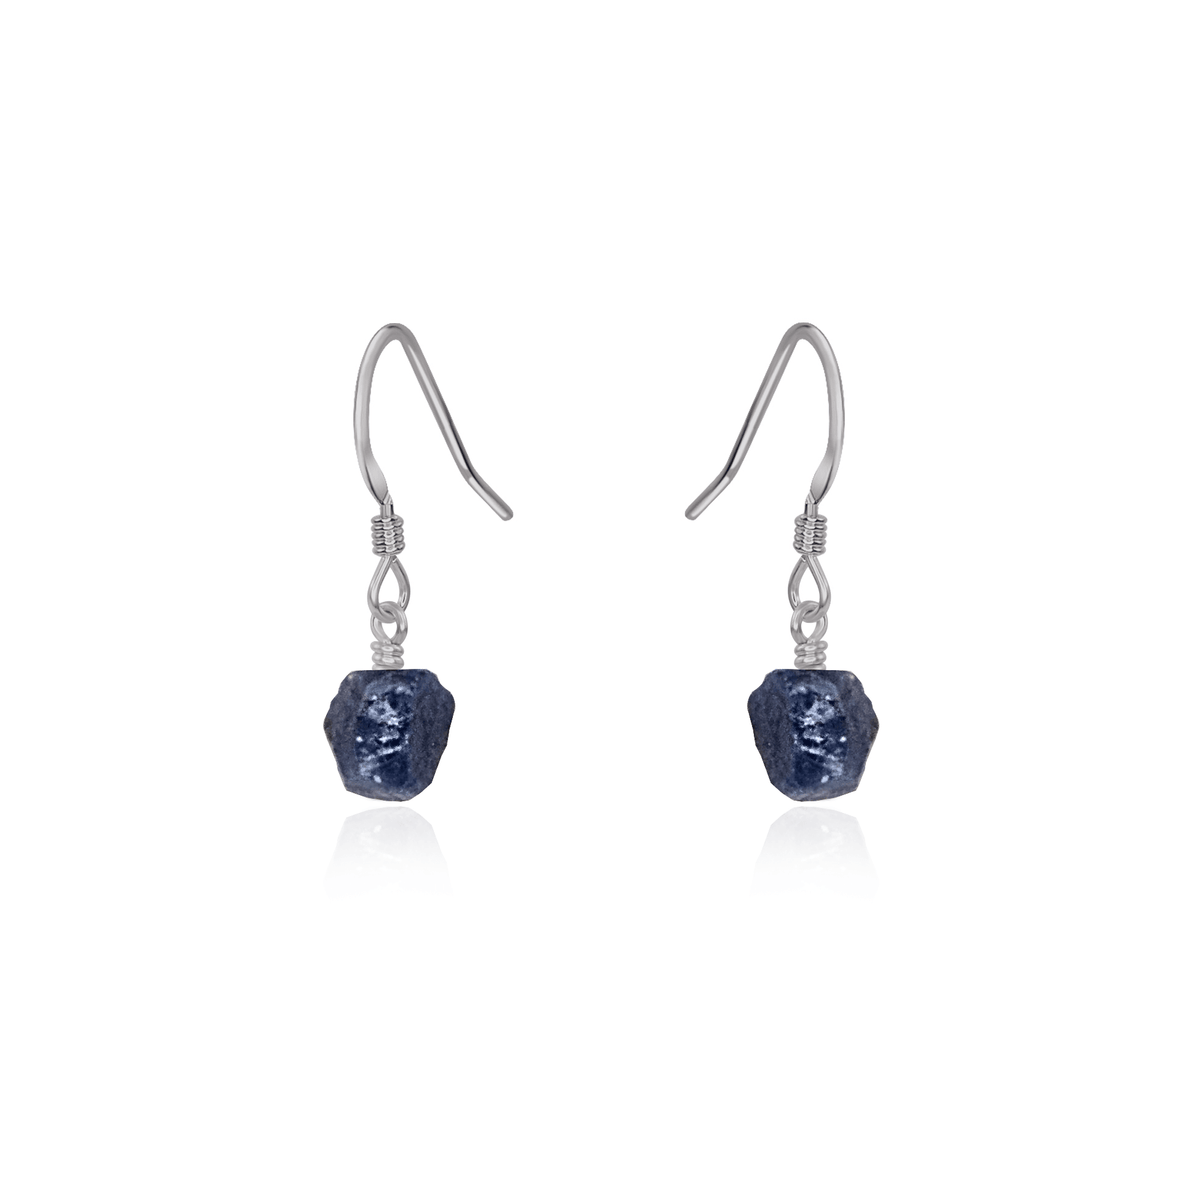 Raw Blue Sapphire Crystal Dangle Drop Earrings - Raw Blue Sapphire Crystal Dangle Drop Earrings - Stainless Steel - Luna Tide Handmade Crystal Jewellery